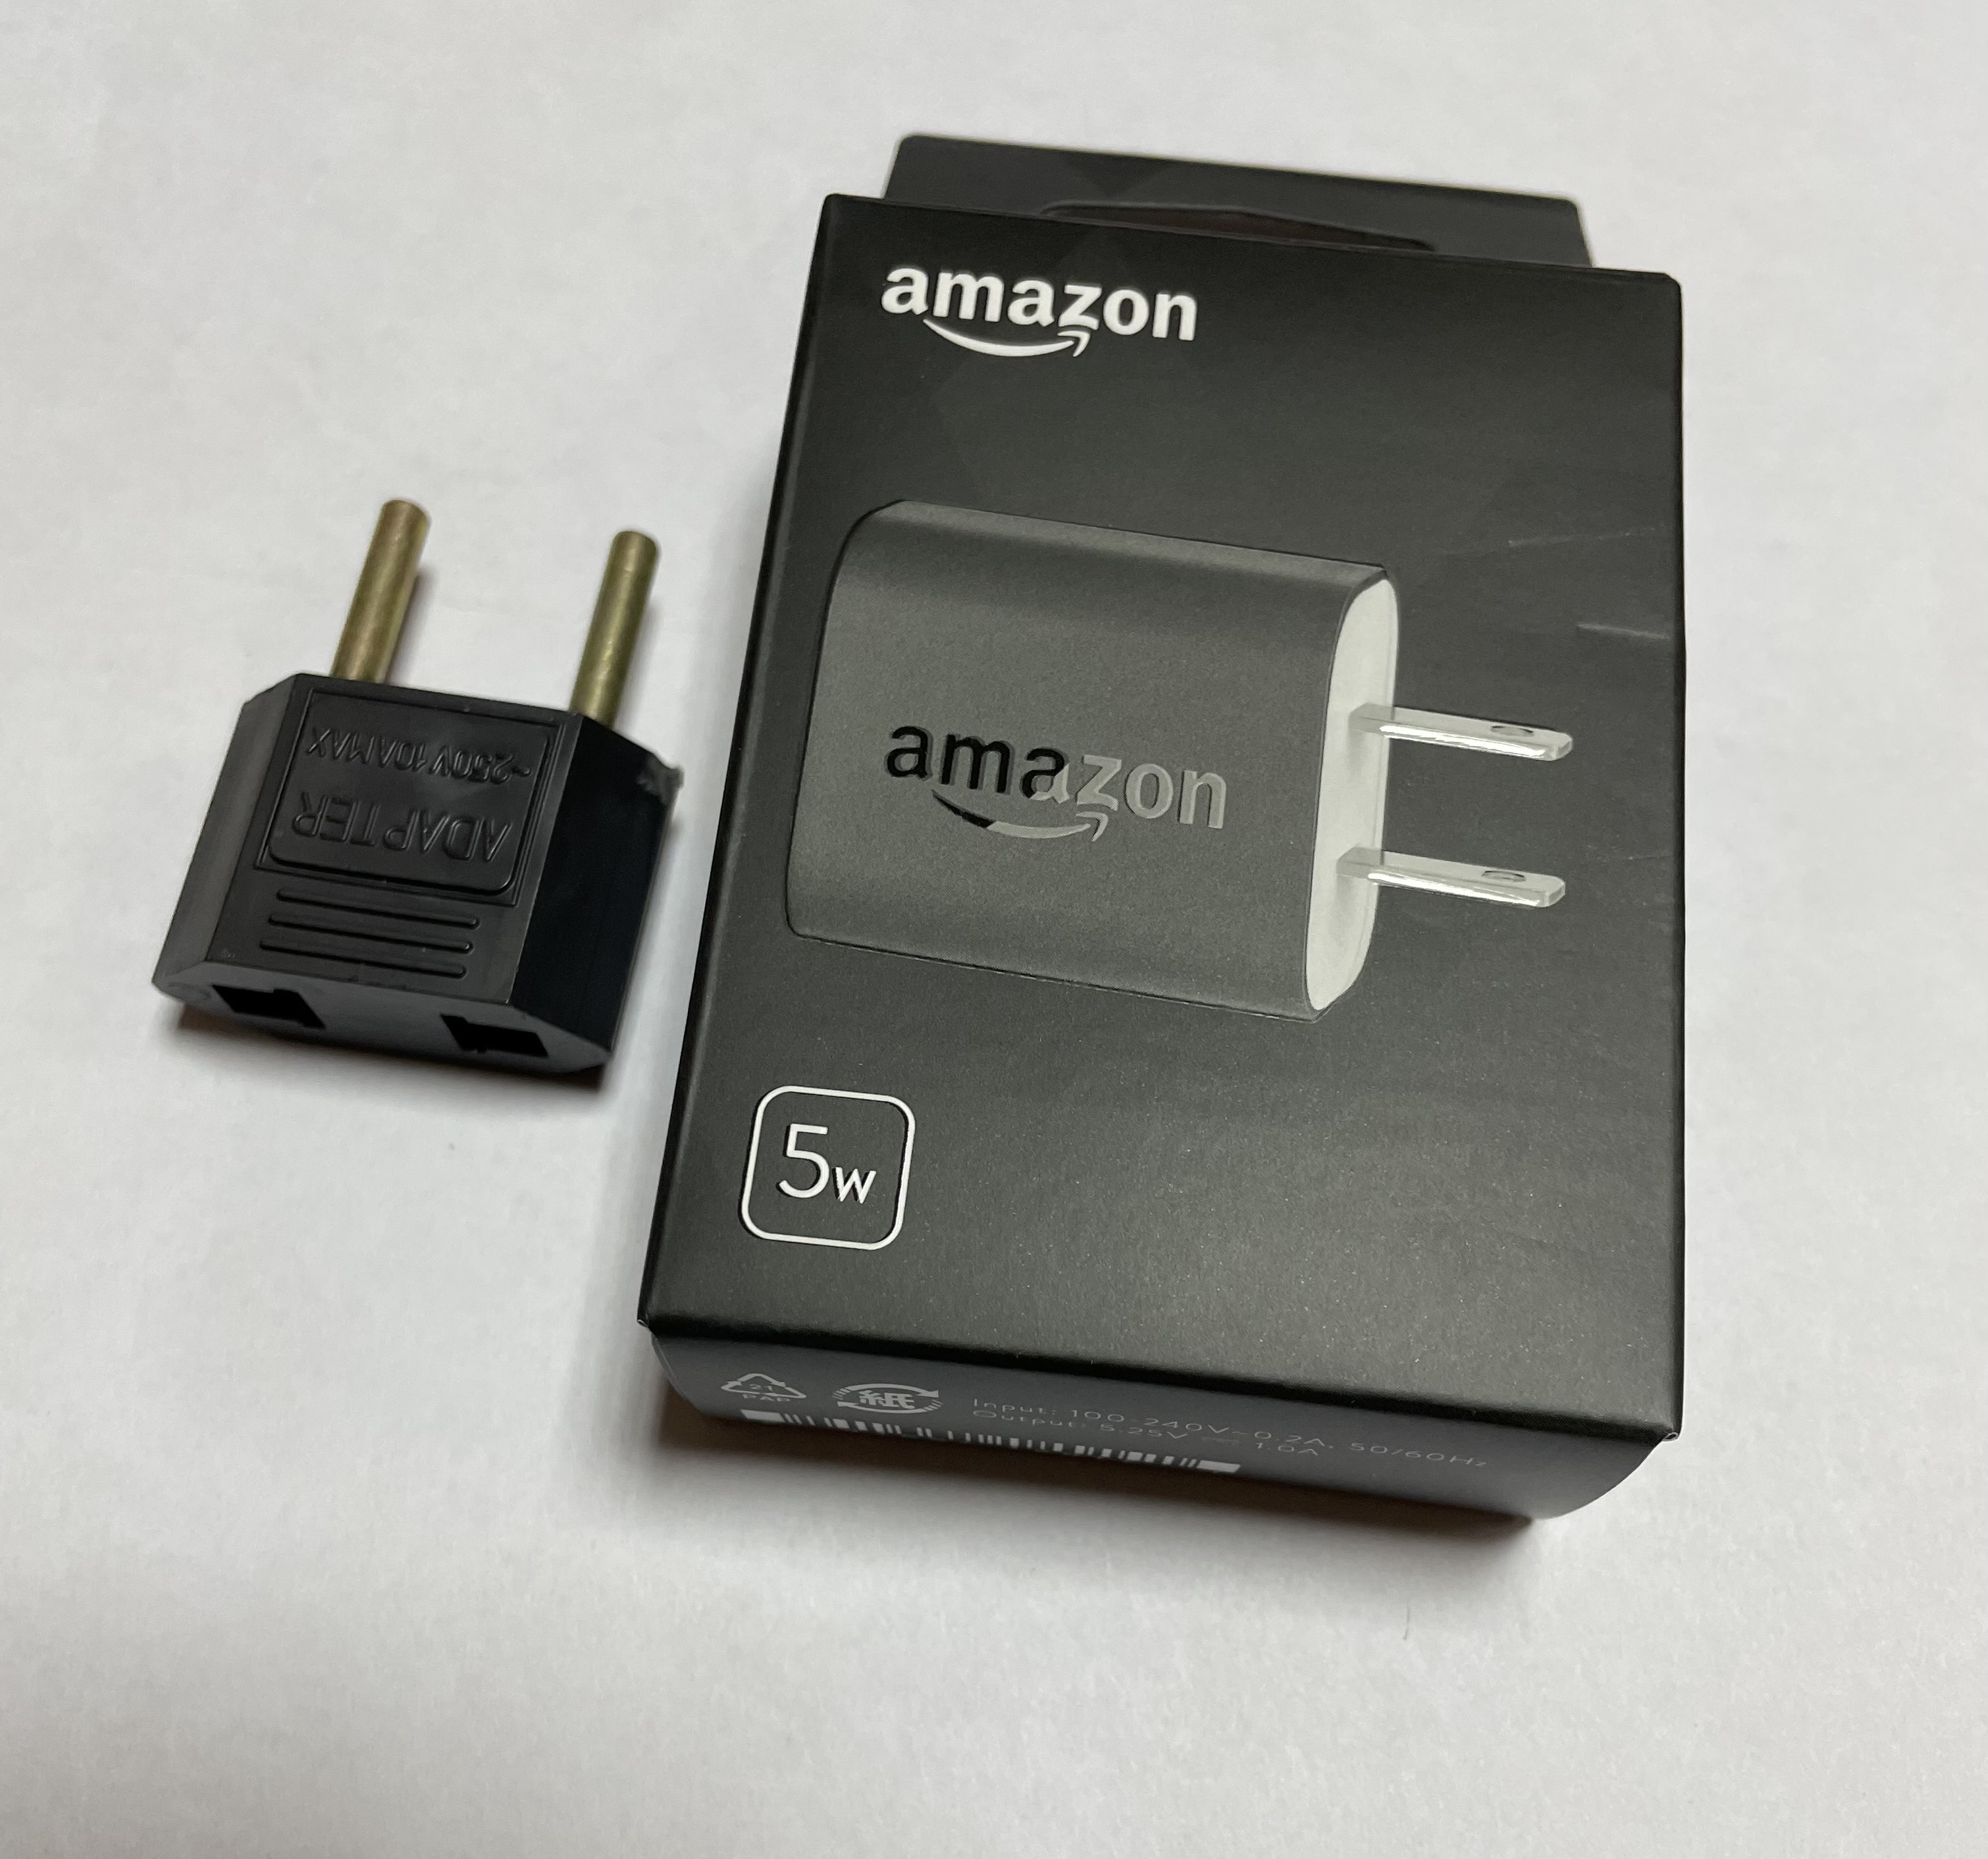 Amazon USB Оригинальный сетевой адаптер 5W (плоская вилка), черный  +переходник